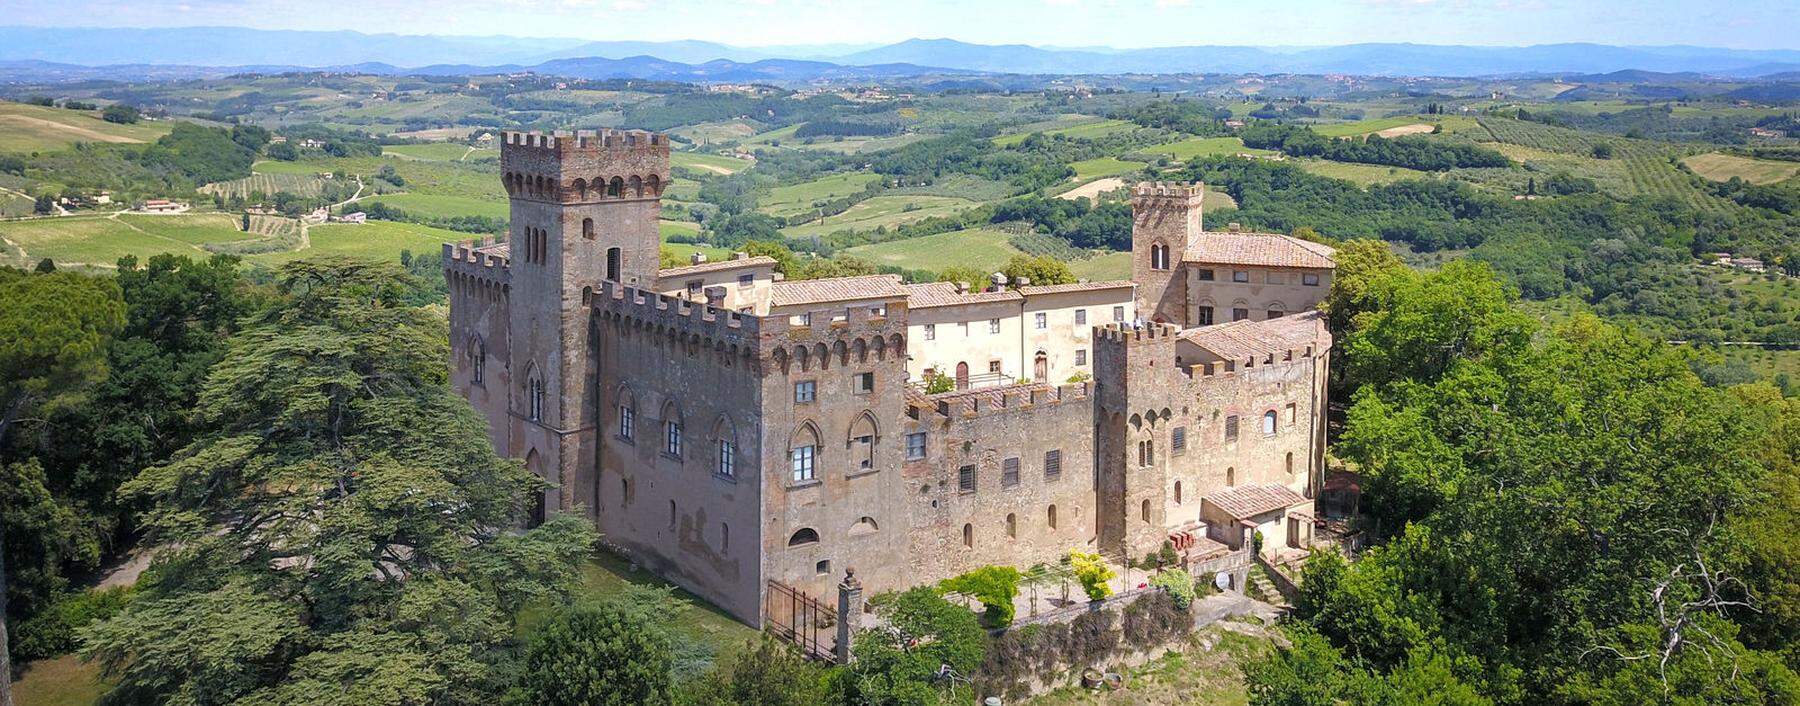 Zwischen Siena und Florenz. Burg mit Blick auf Weinberge und Olivenhaine. 